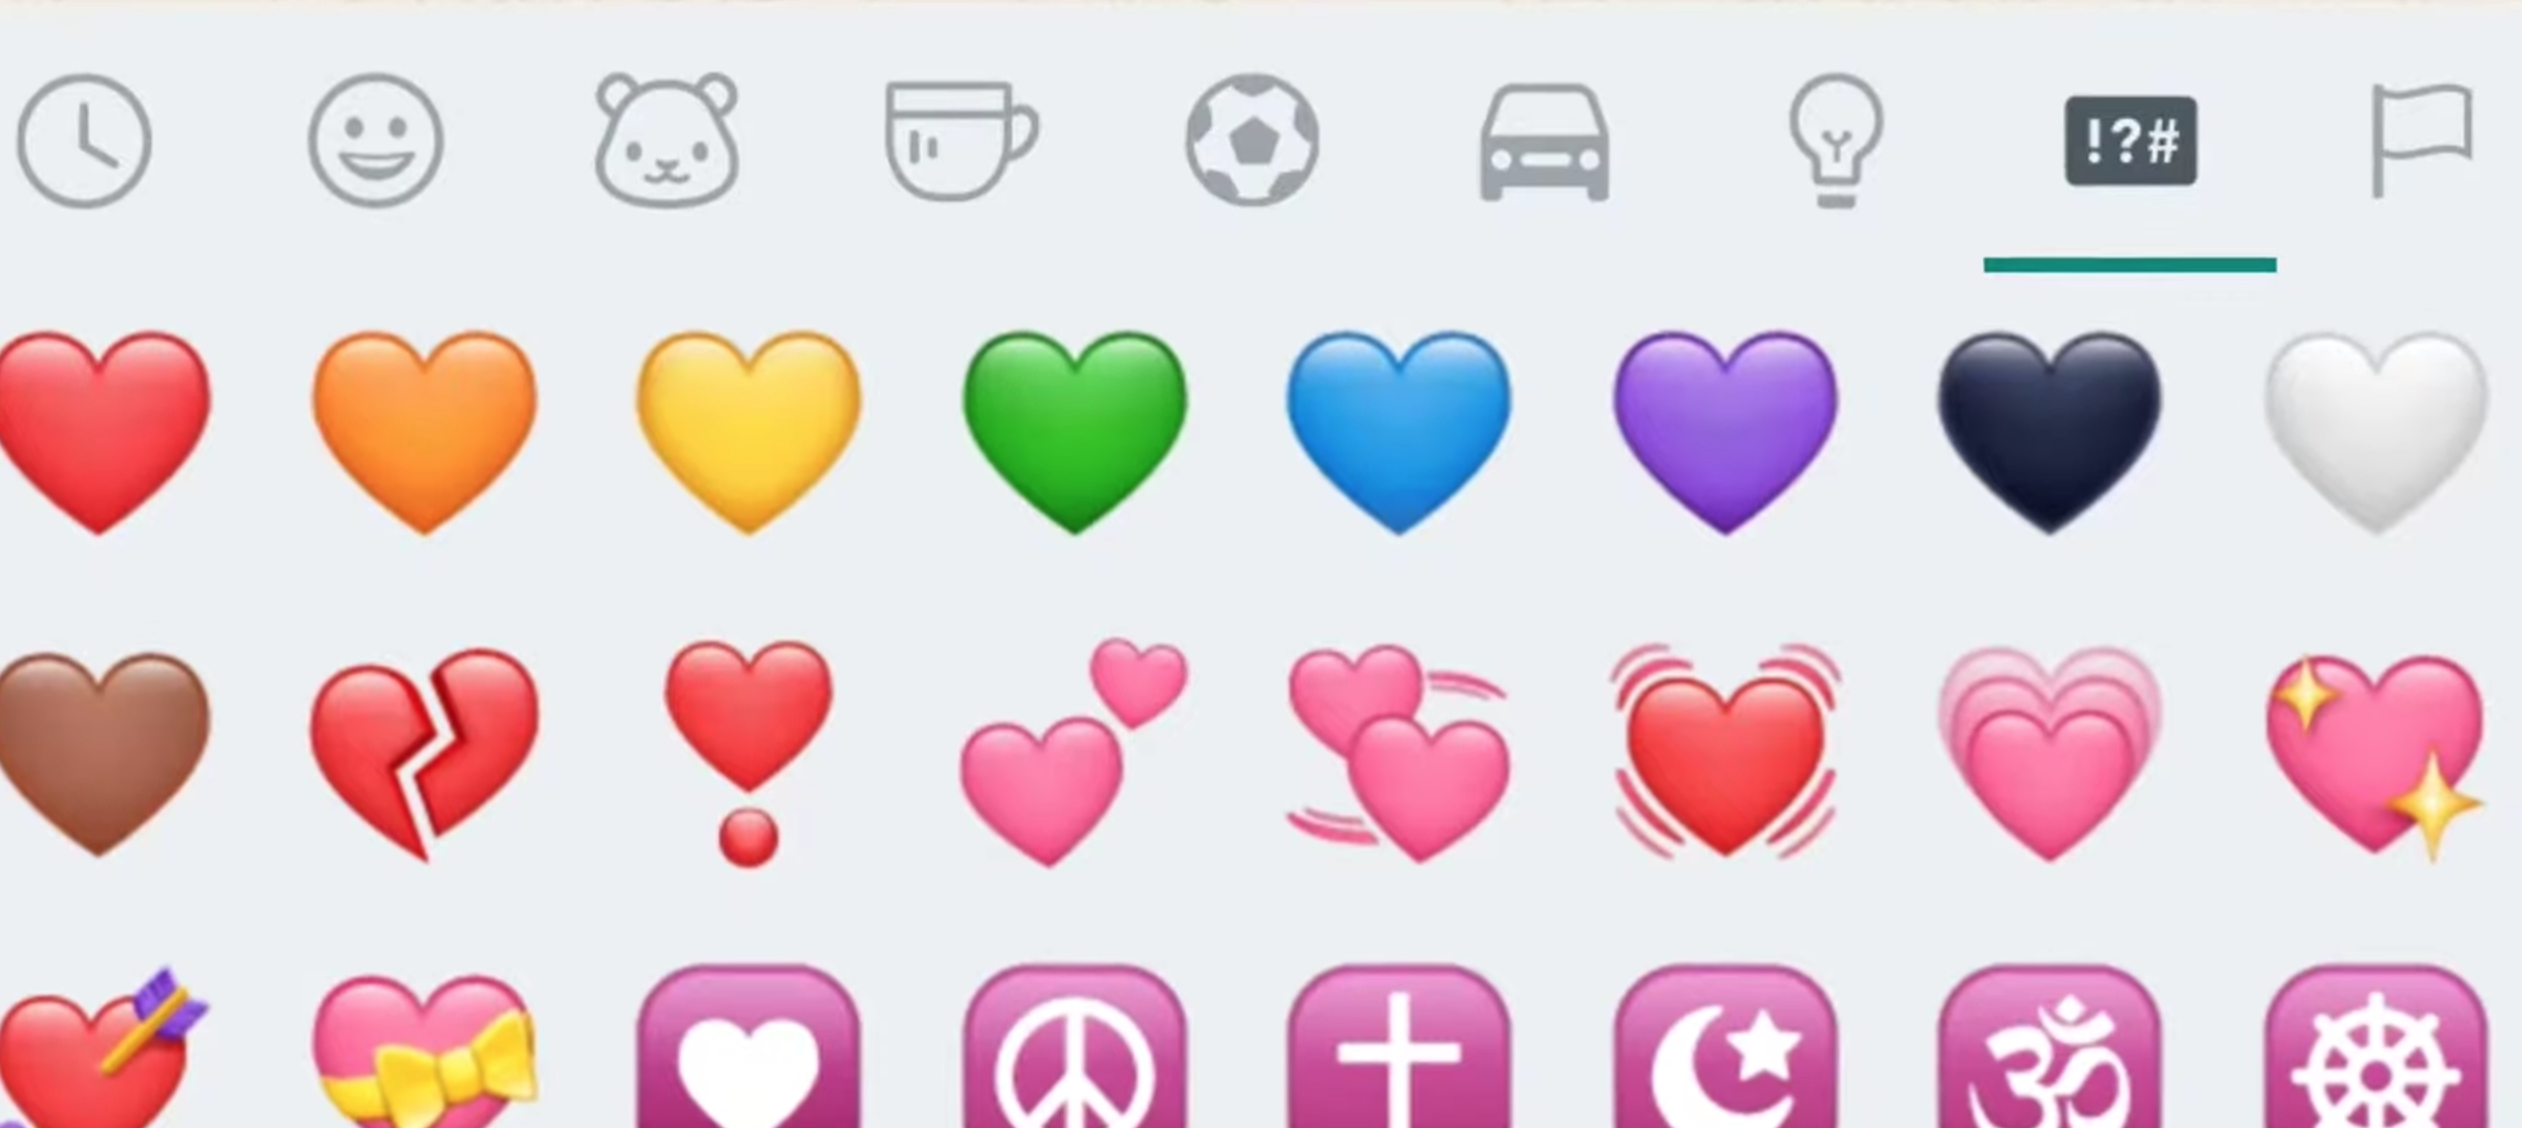  El verdadero significado de los emojis de corazón en WhatsApp